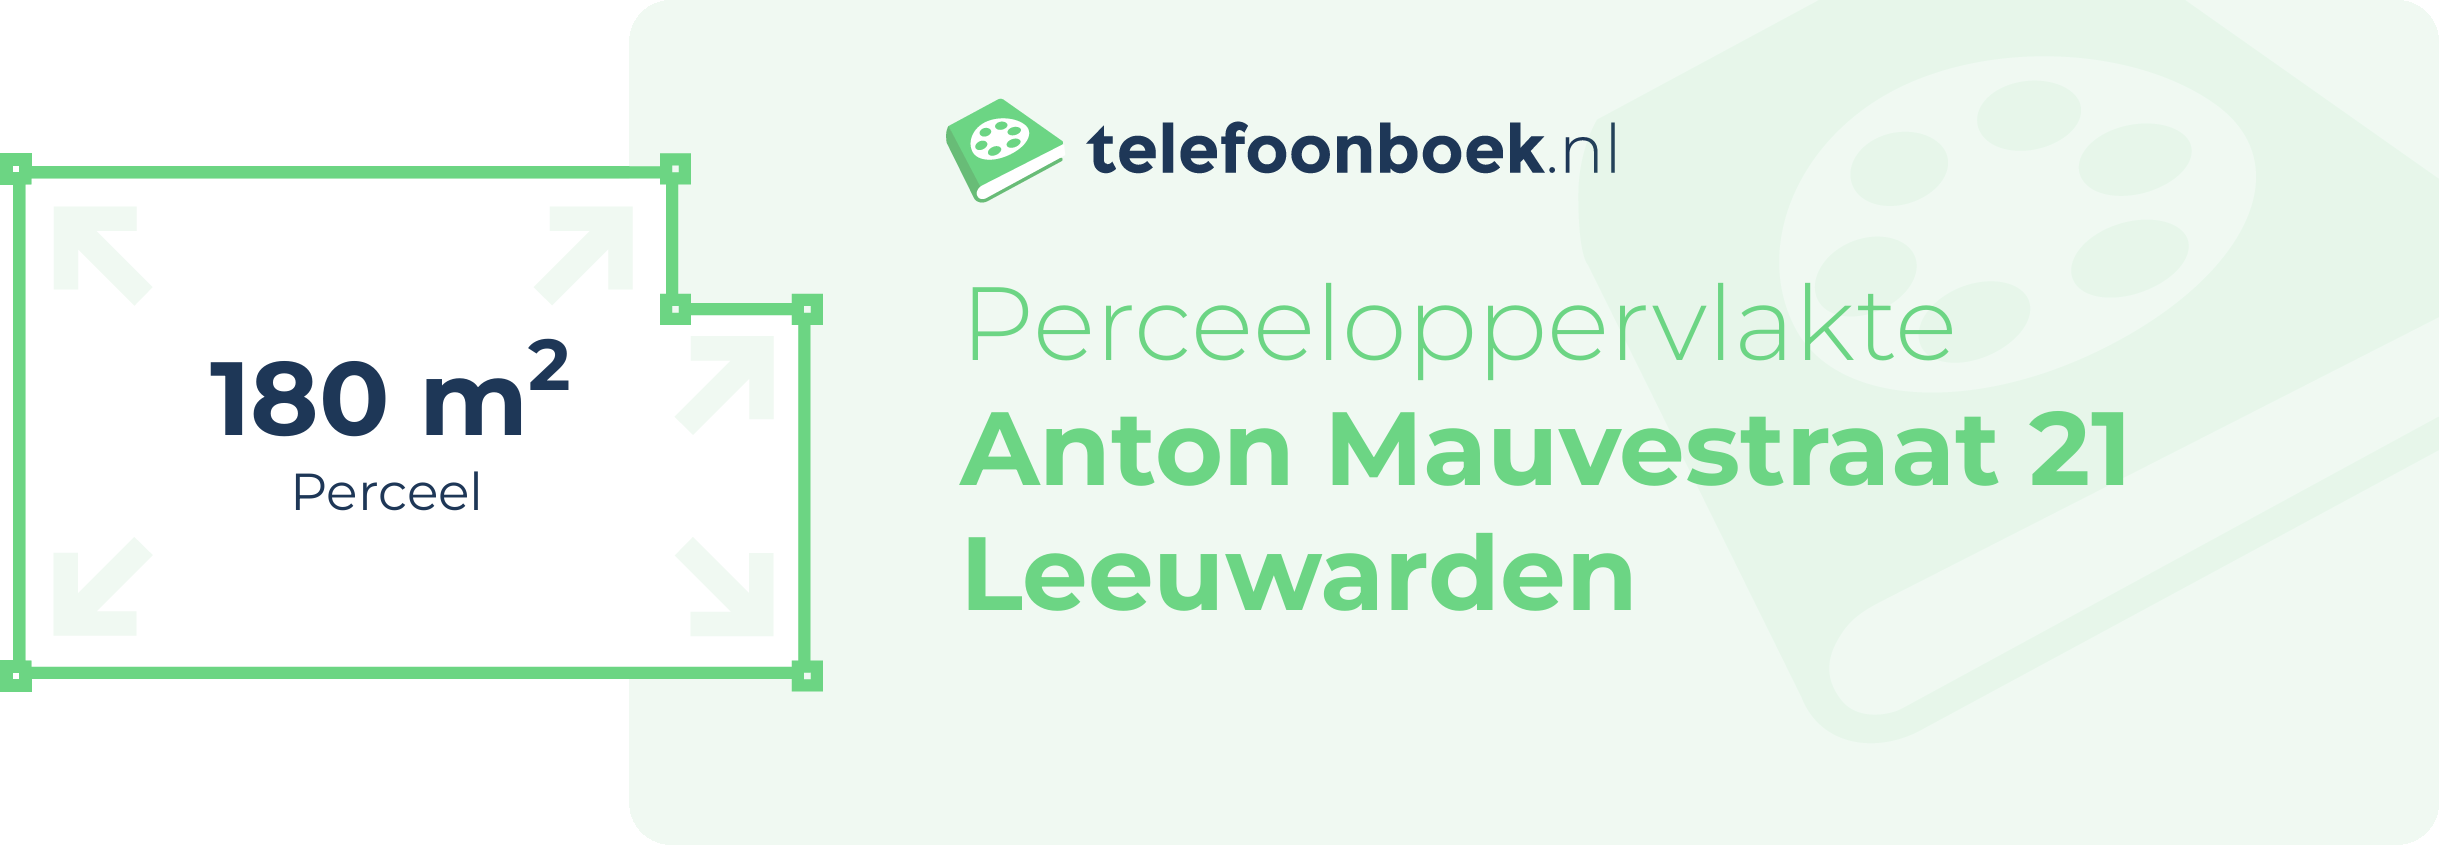 Perceeloppervlakte Anton Mauvestraat 21 Leeuwarden